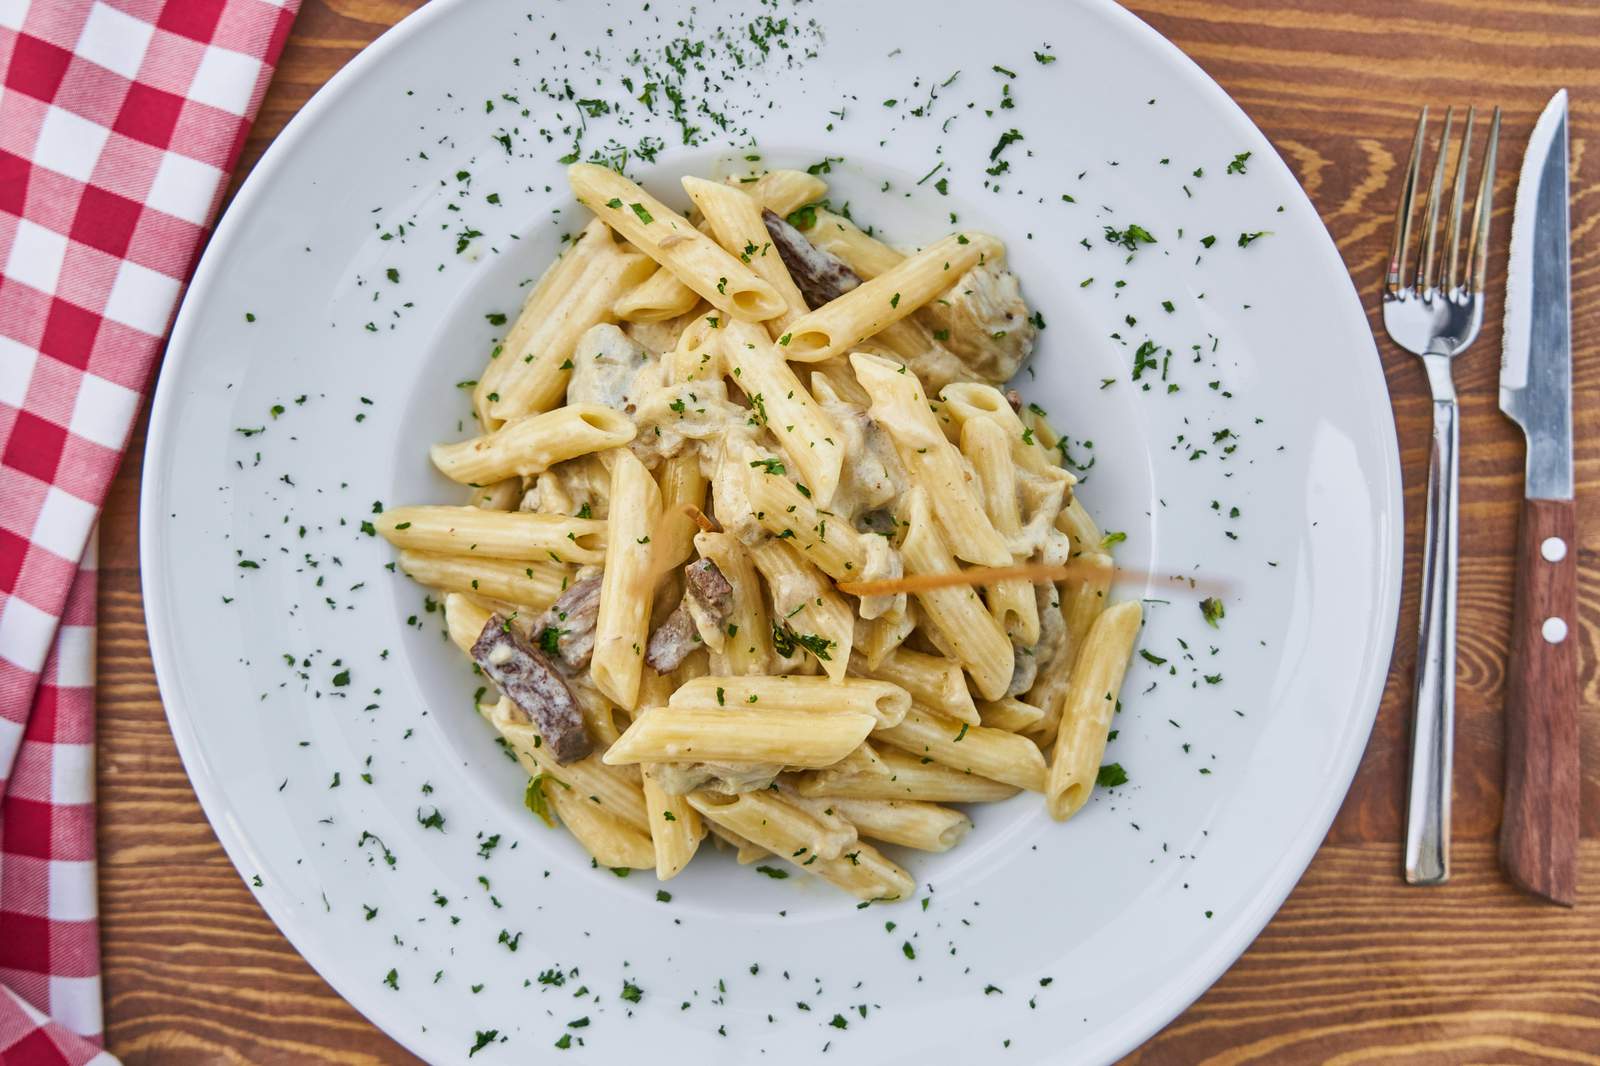 Vote 4 The Best 2020: Top 10 Italian restaurants in Metro Detroit